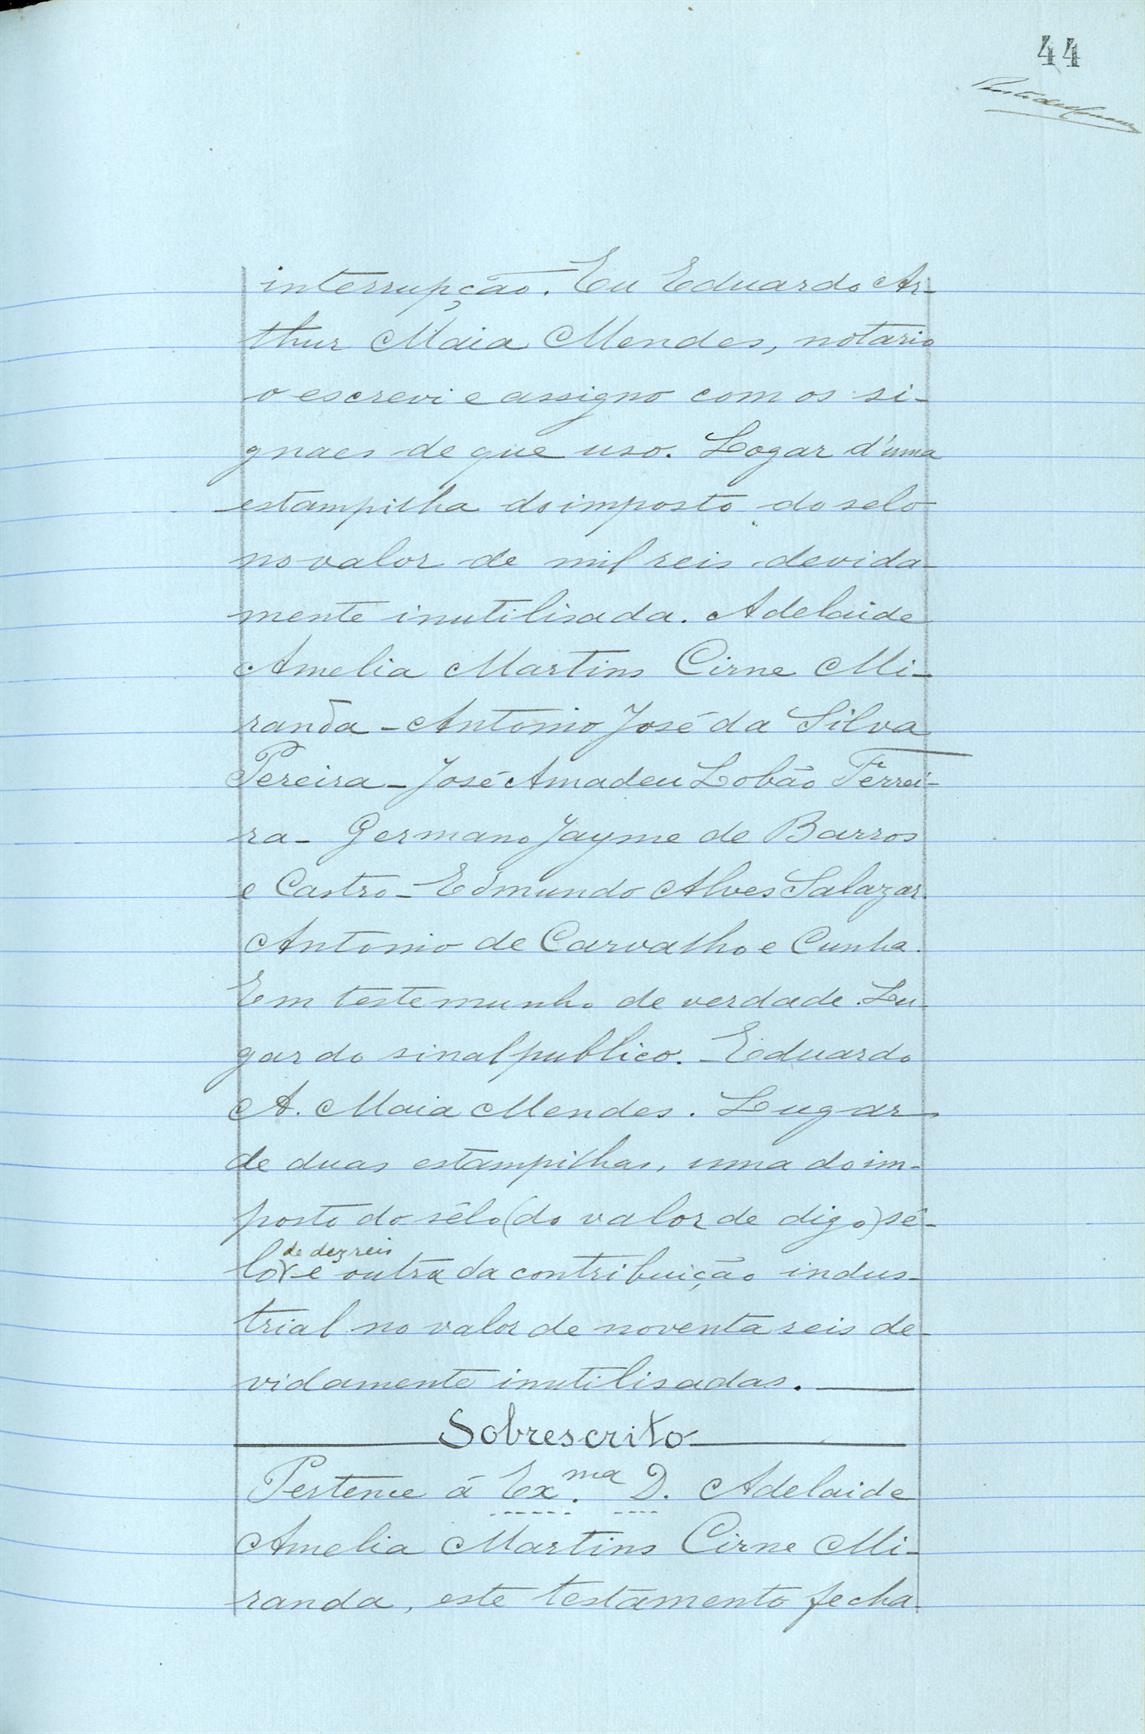 Registo do testamento com que faleceu Adelaide Amélia Martins Cirne Miranda, proprietária, viúva de Francisco Machado de Miranda